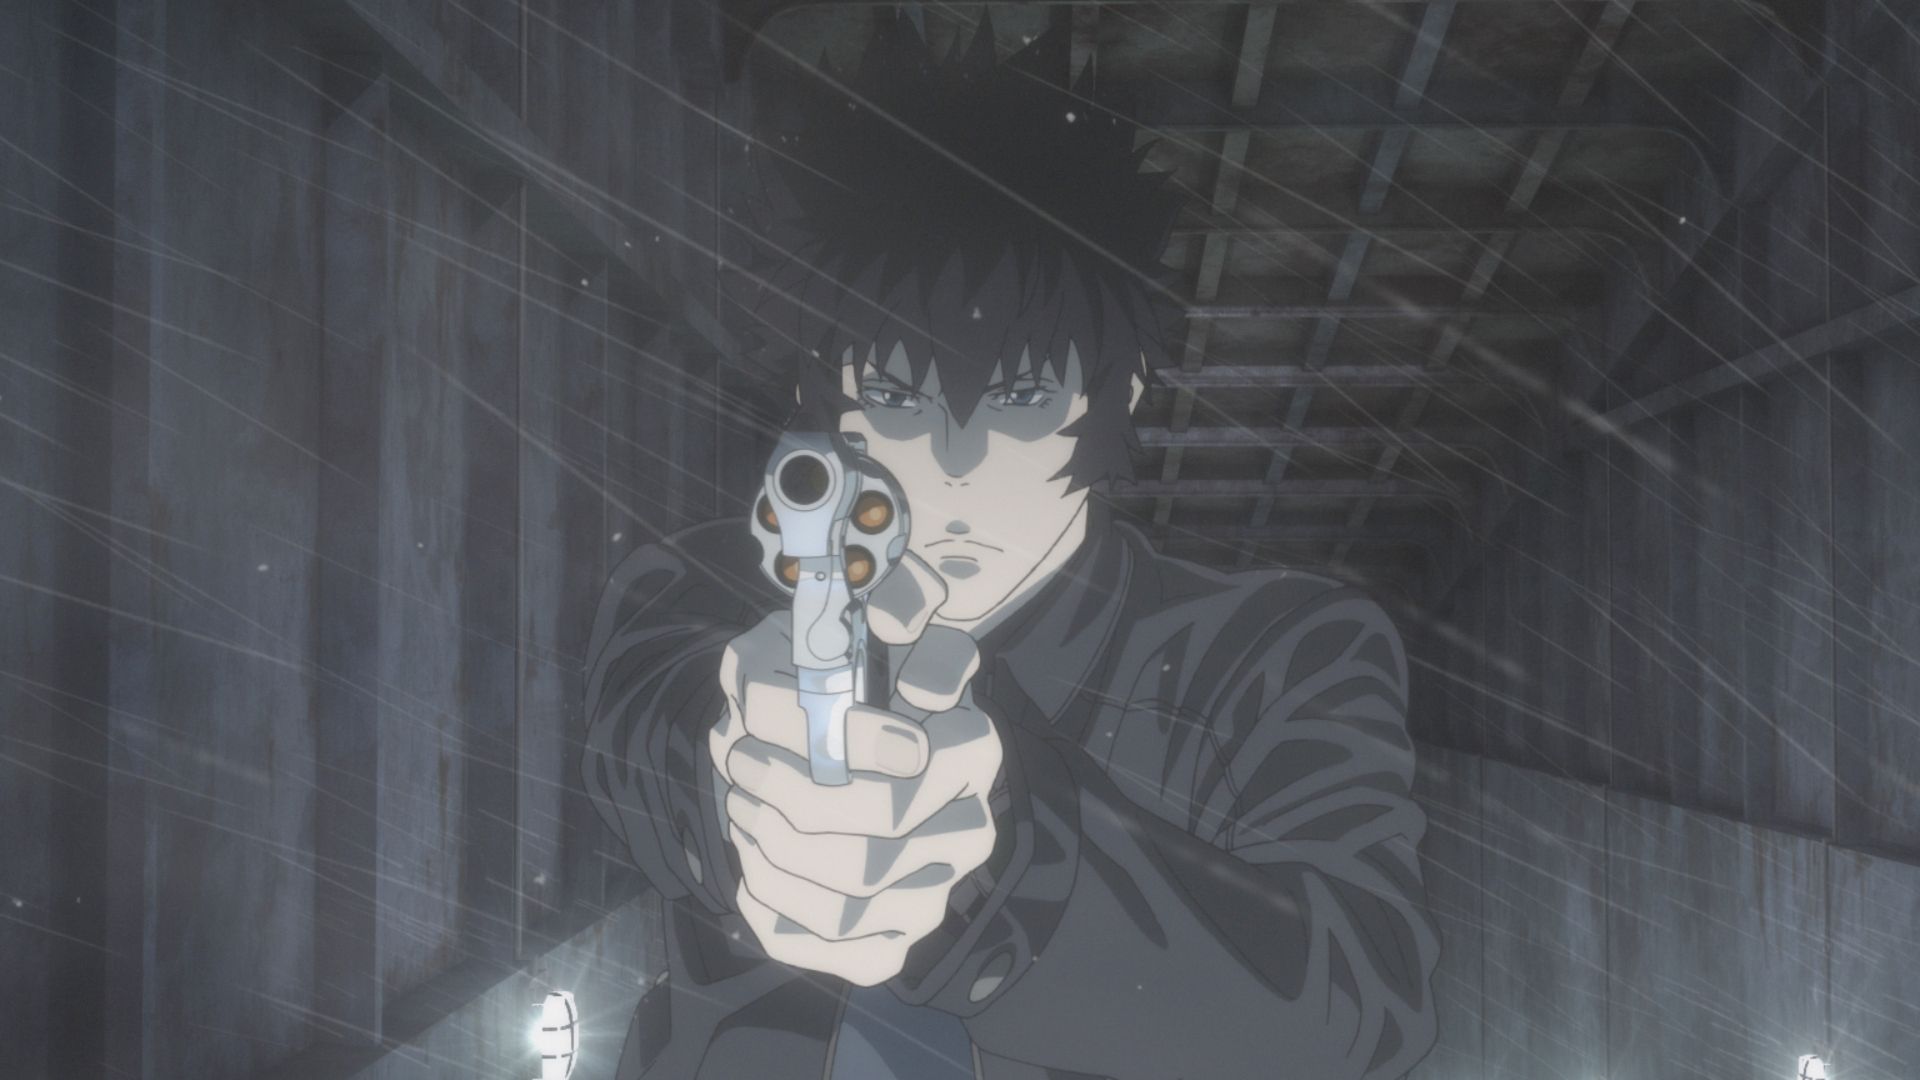 Psycho-Pass 2 - Assistir Animes Online HD